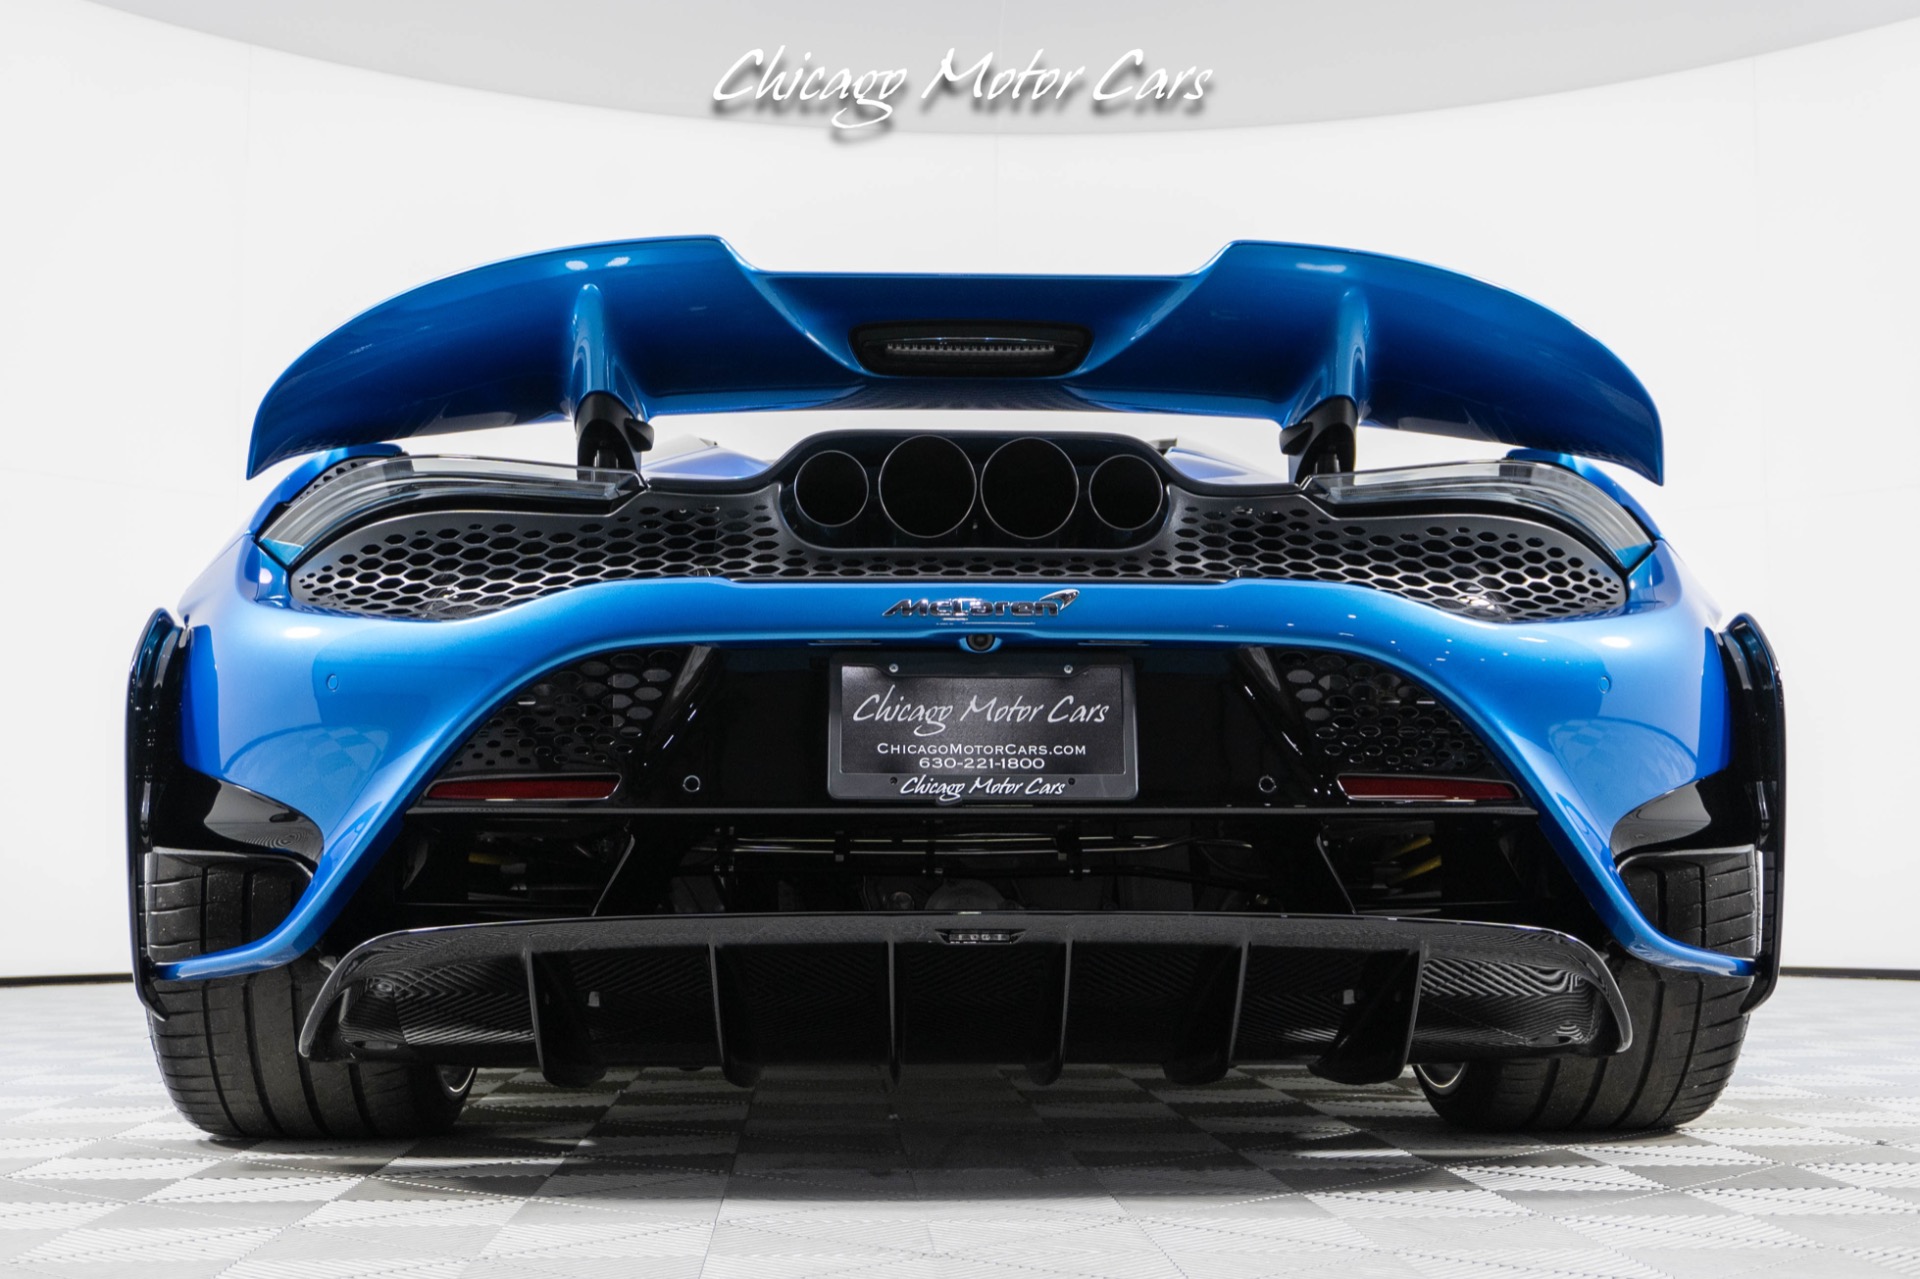 Used-2022-McLaren-765LT-Spider-Huge-MSRP-1-of-1-MSO-Celerium-Blue-Anrky-Wheels-Only-1600-Miles